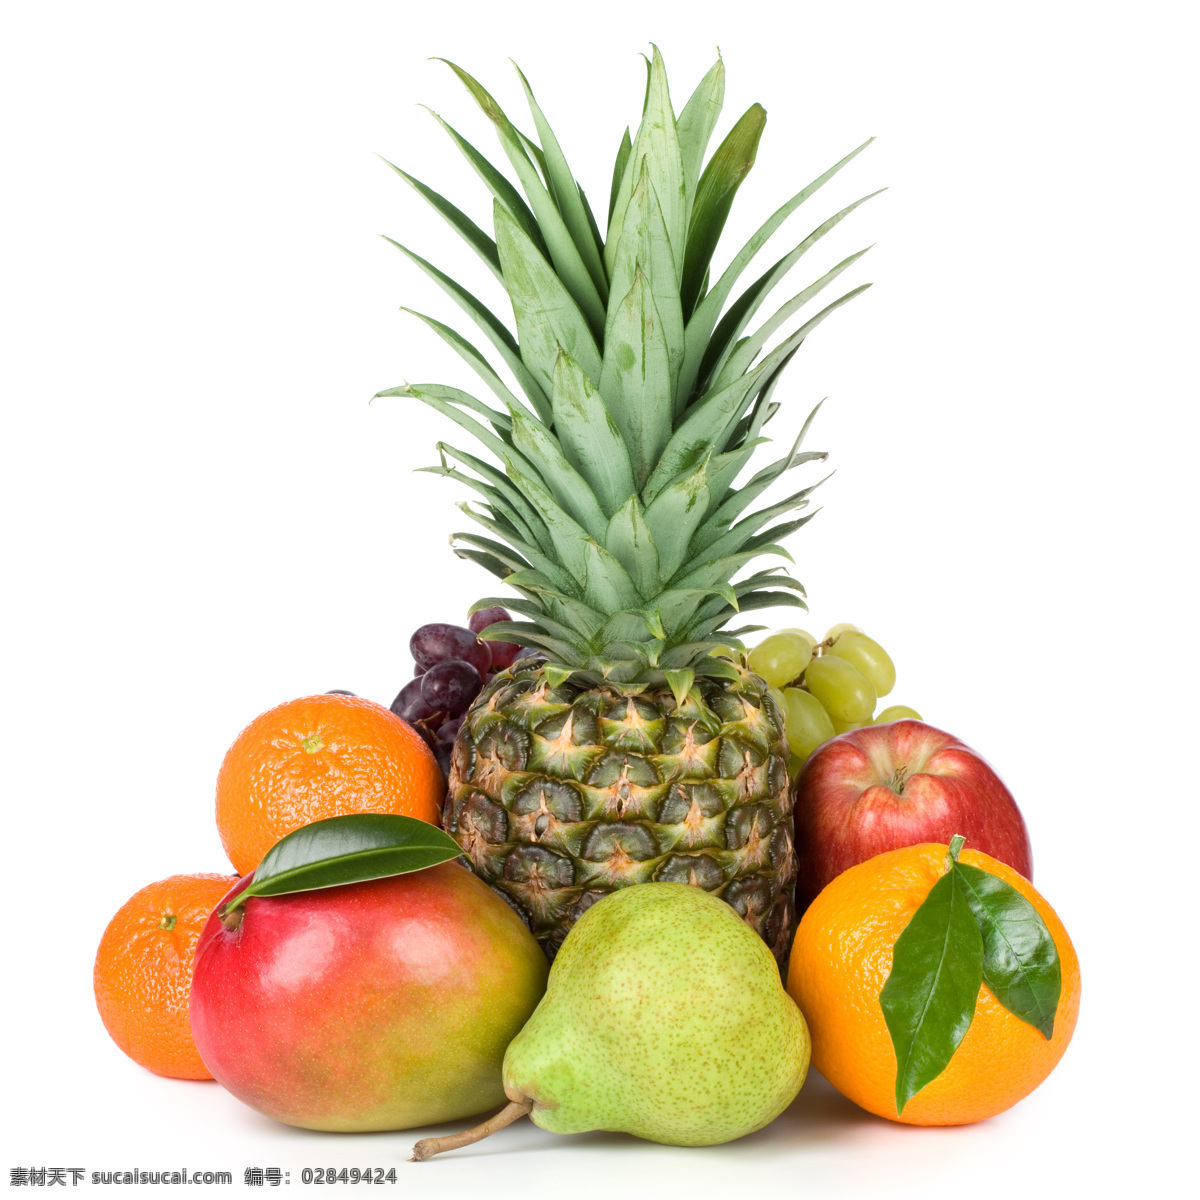 水果 广告 背景 素材图片 橙子 橘子 菠萝 苹果 梨 水果摄影 水果广告 食物 水果图片 餐饮美食